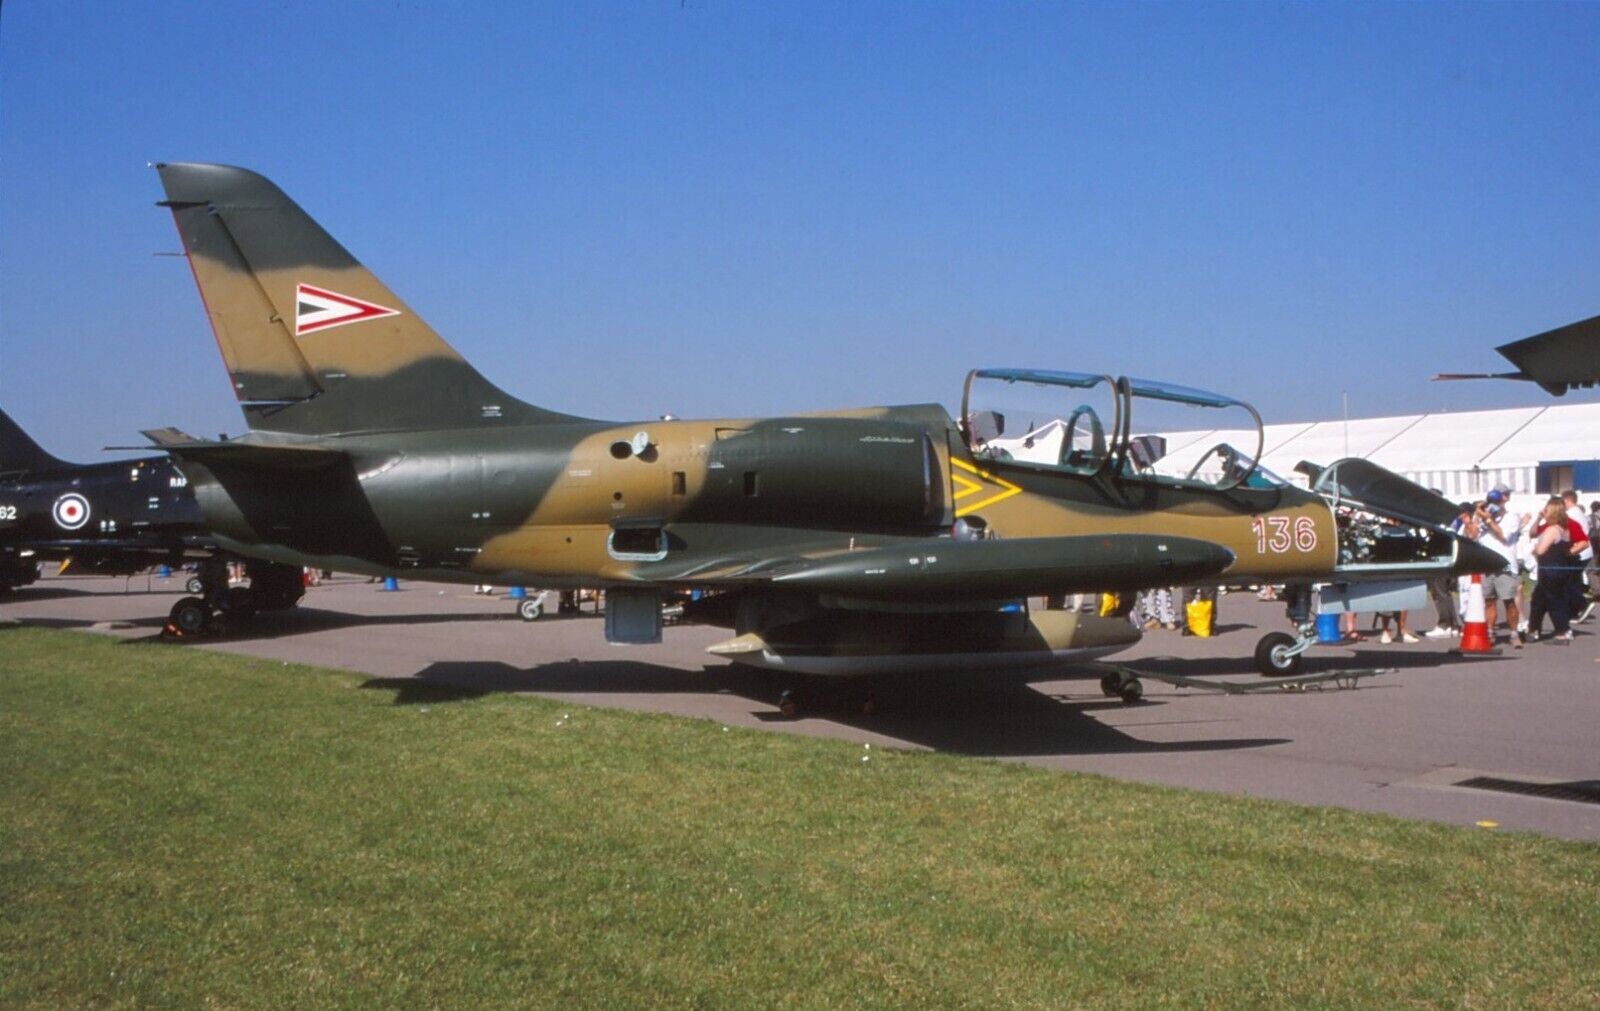 Original colour slide L-39ZO 136 of Hungarian Air Force